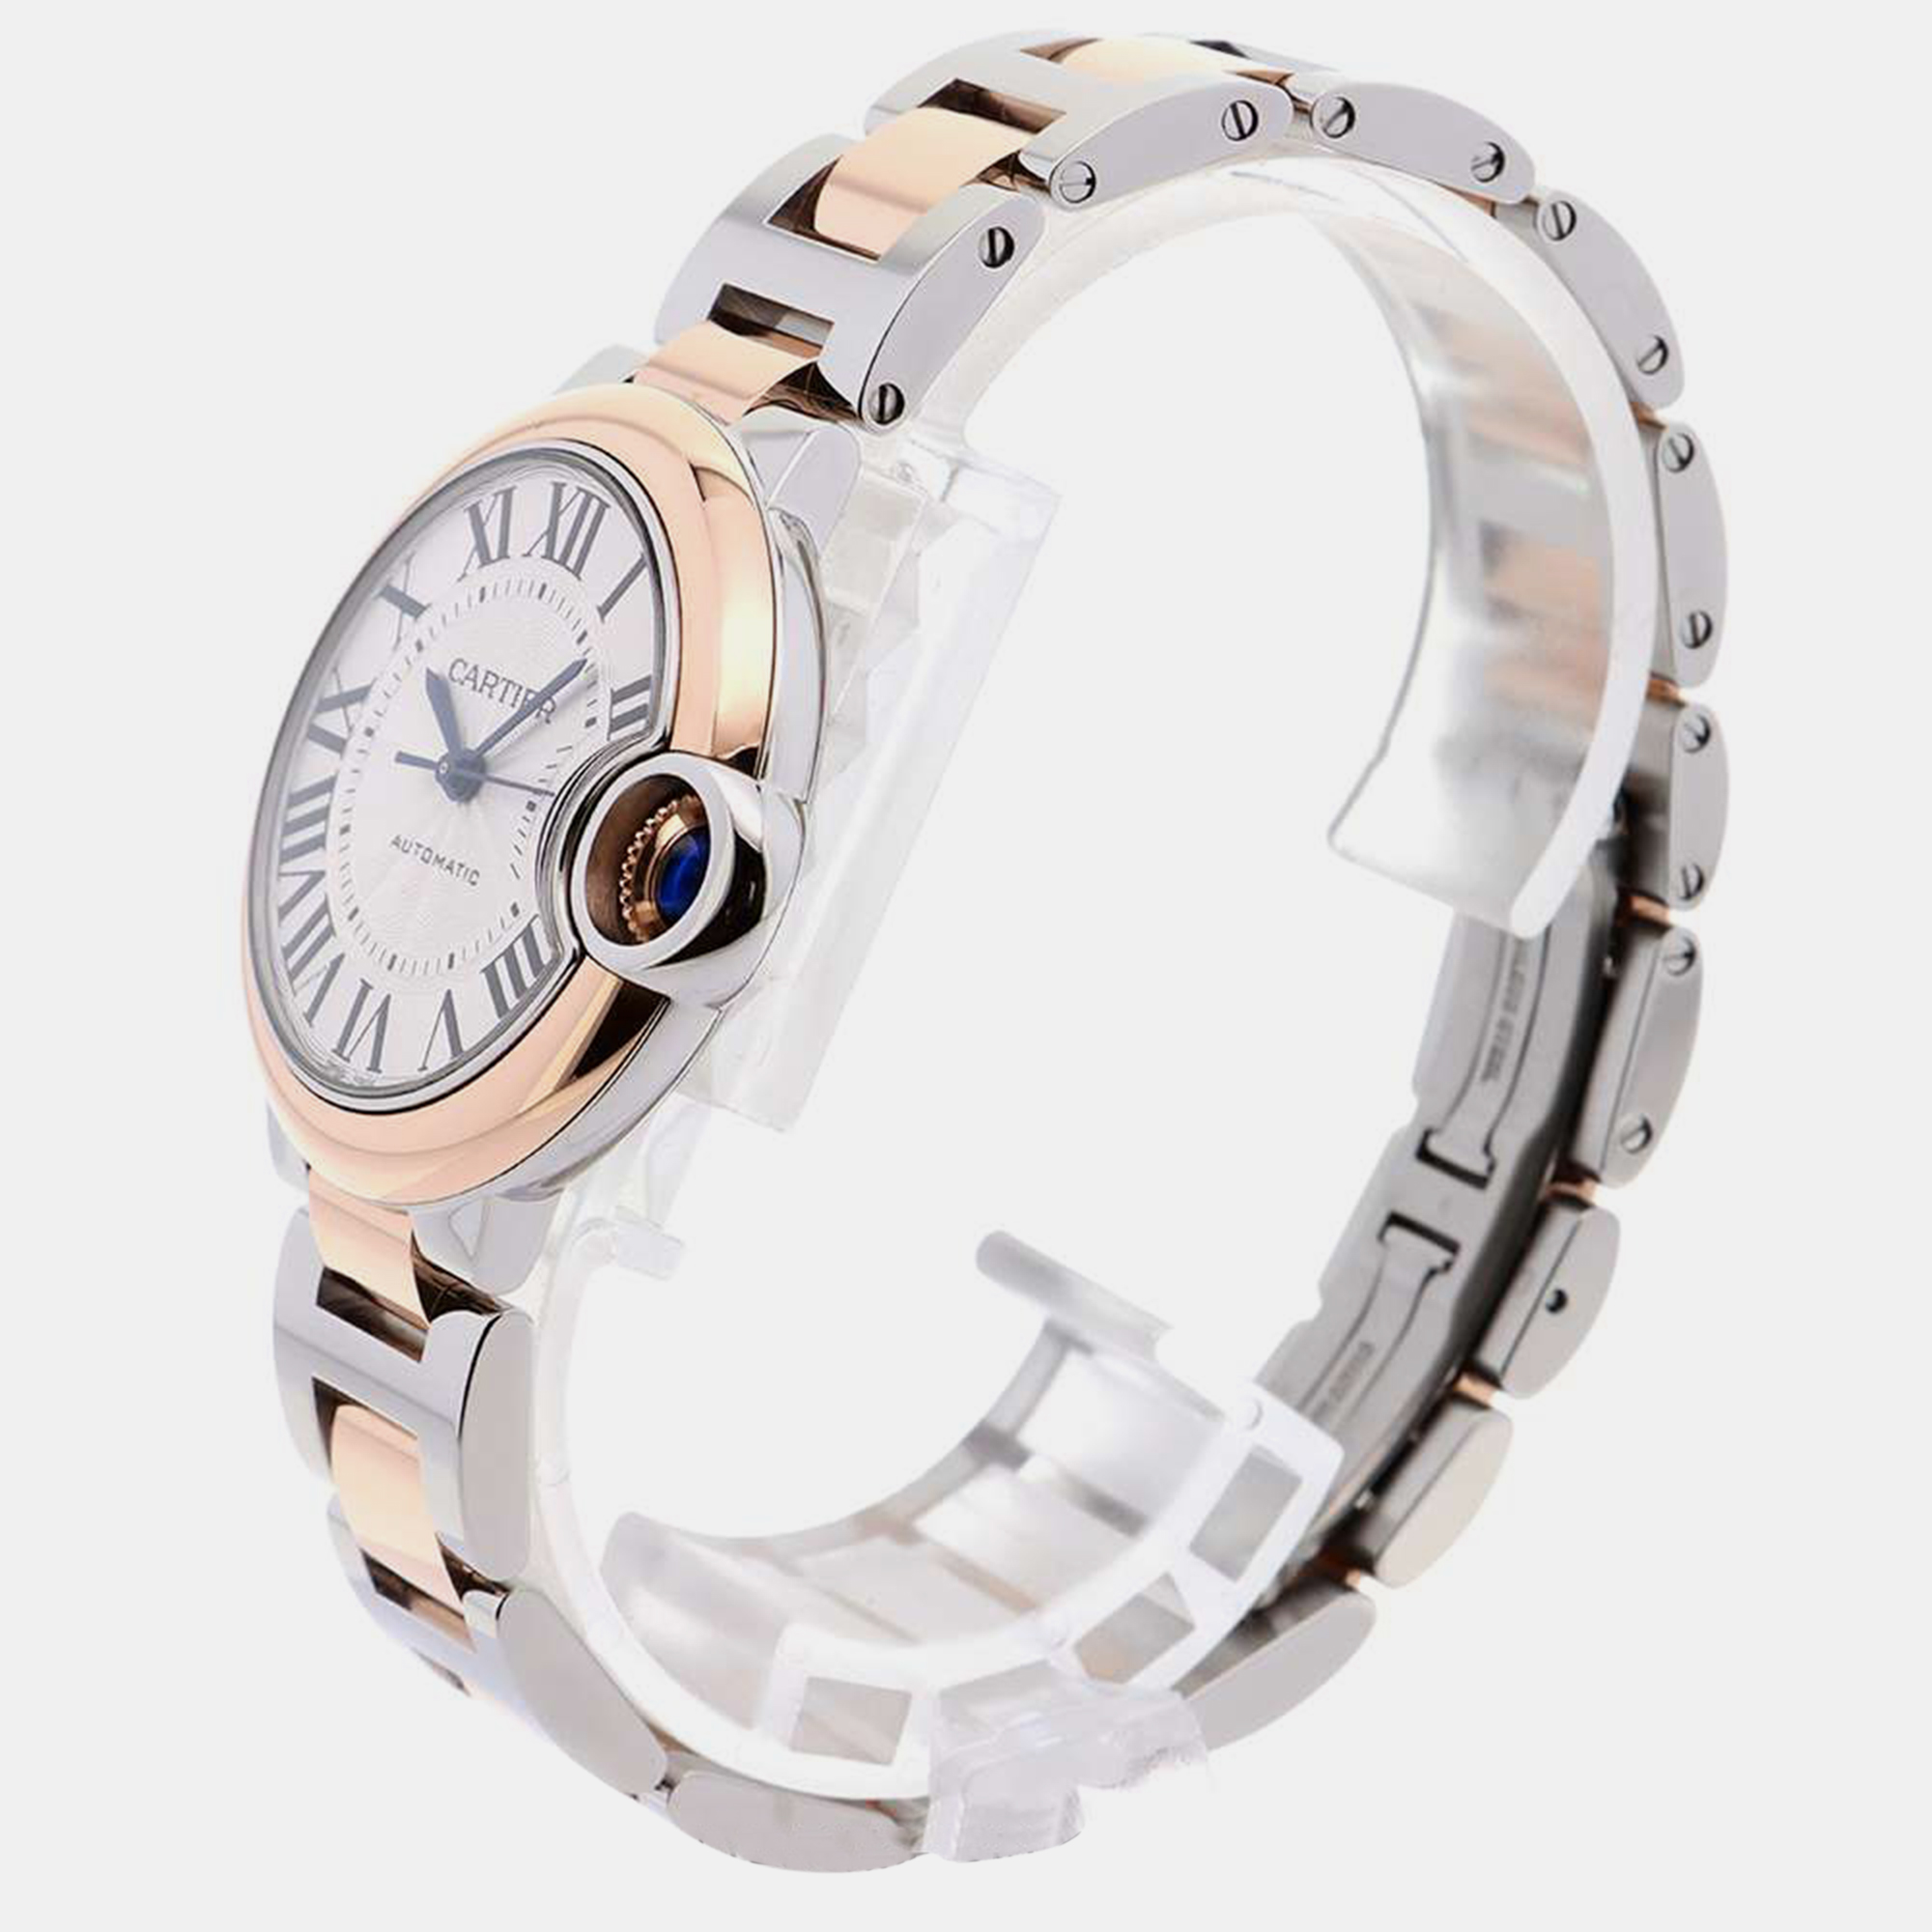 

Cartier Silver 18k Rose Gold Stainless Steel Ballon Bleu W2BB0032 Automatic Men's Wristwatch 33 mm